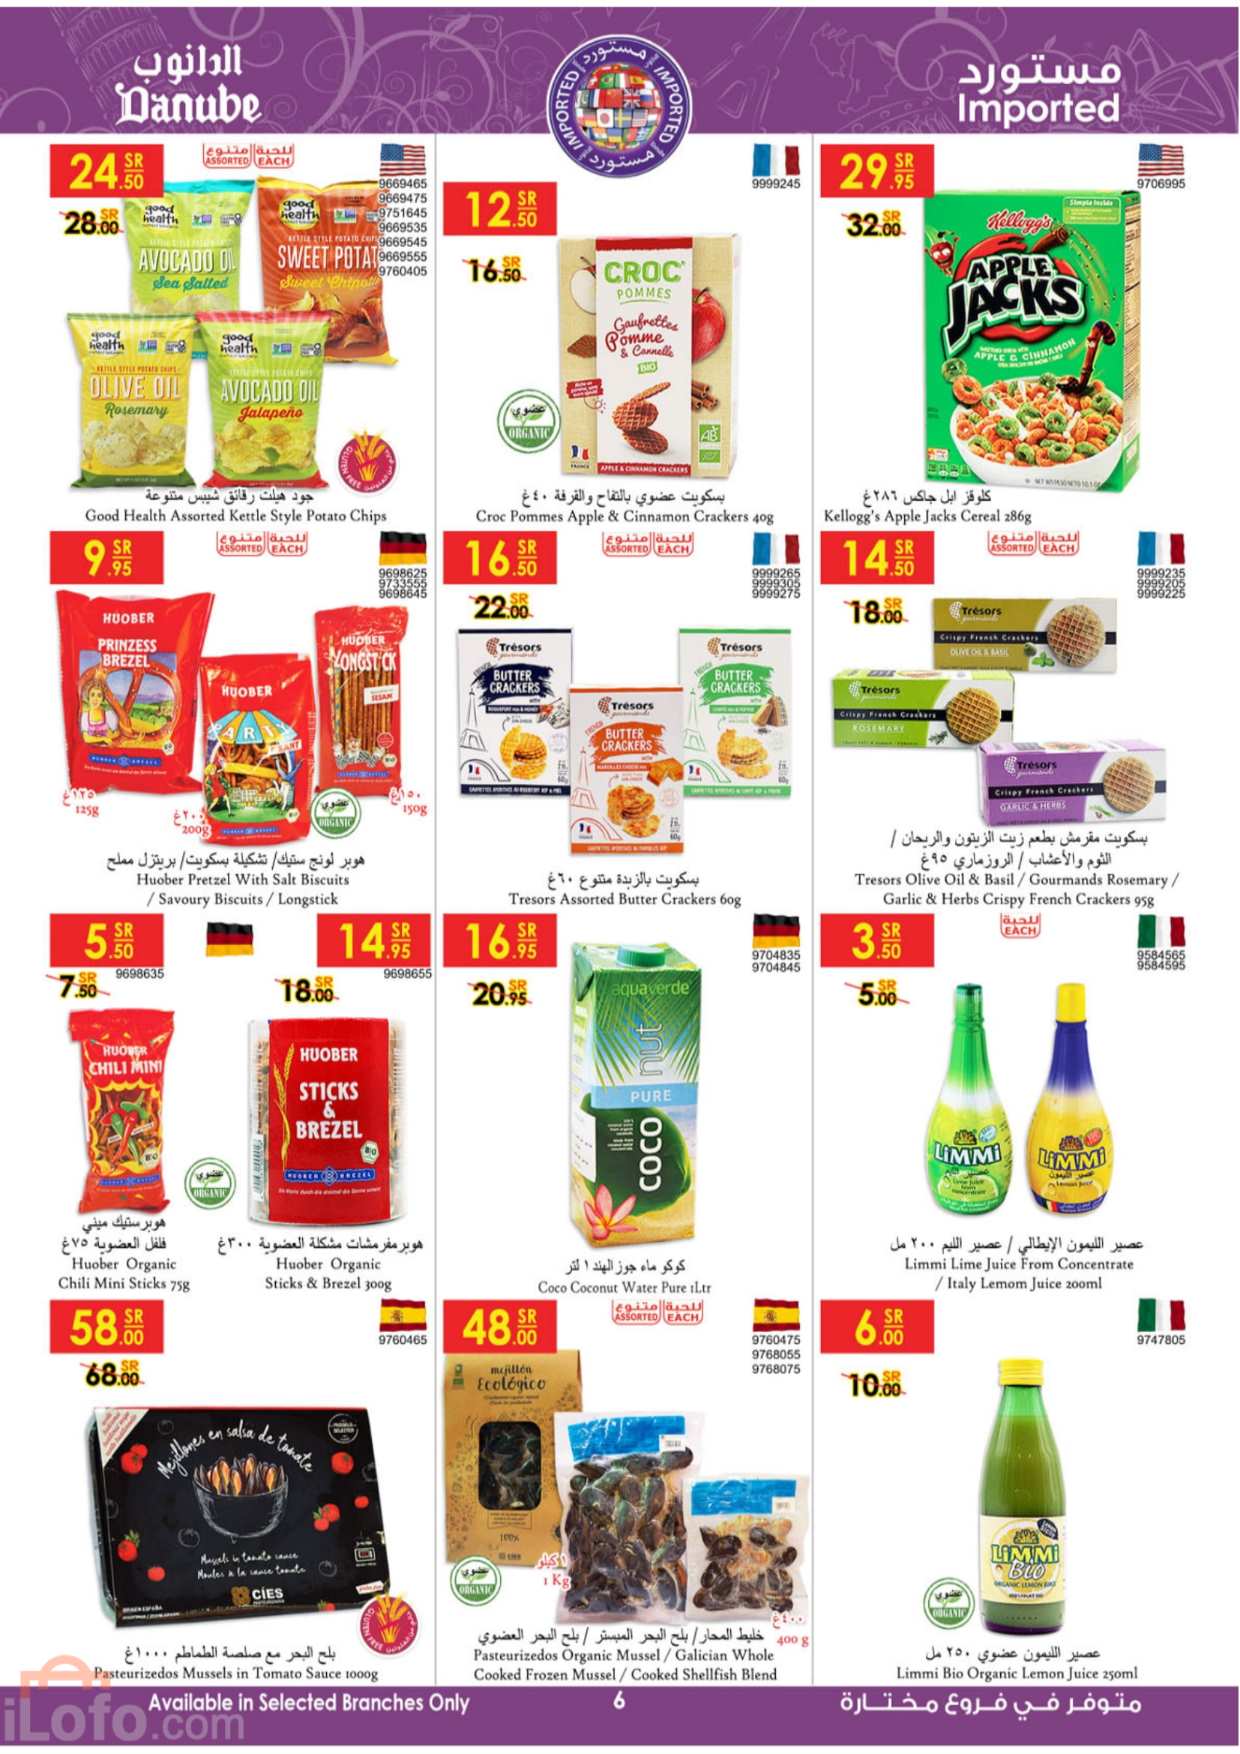 صفحة 6 في عروض عالم المنتجات في الدانوب الدمام الجبيل الخبر والأحساء